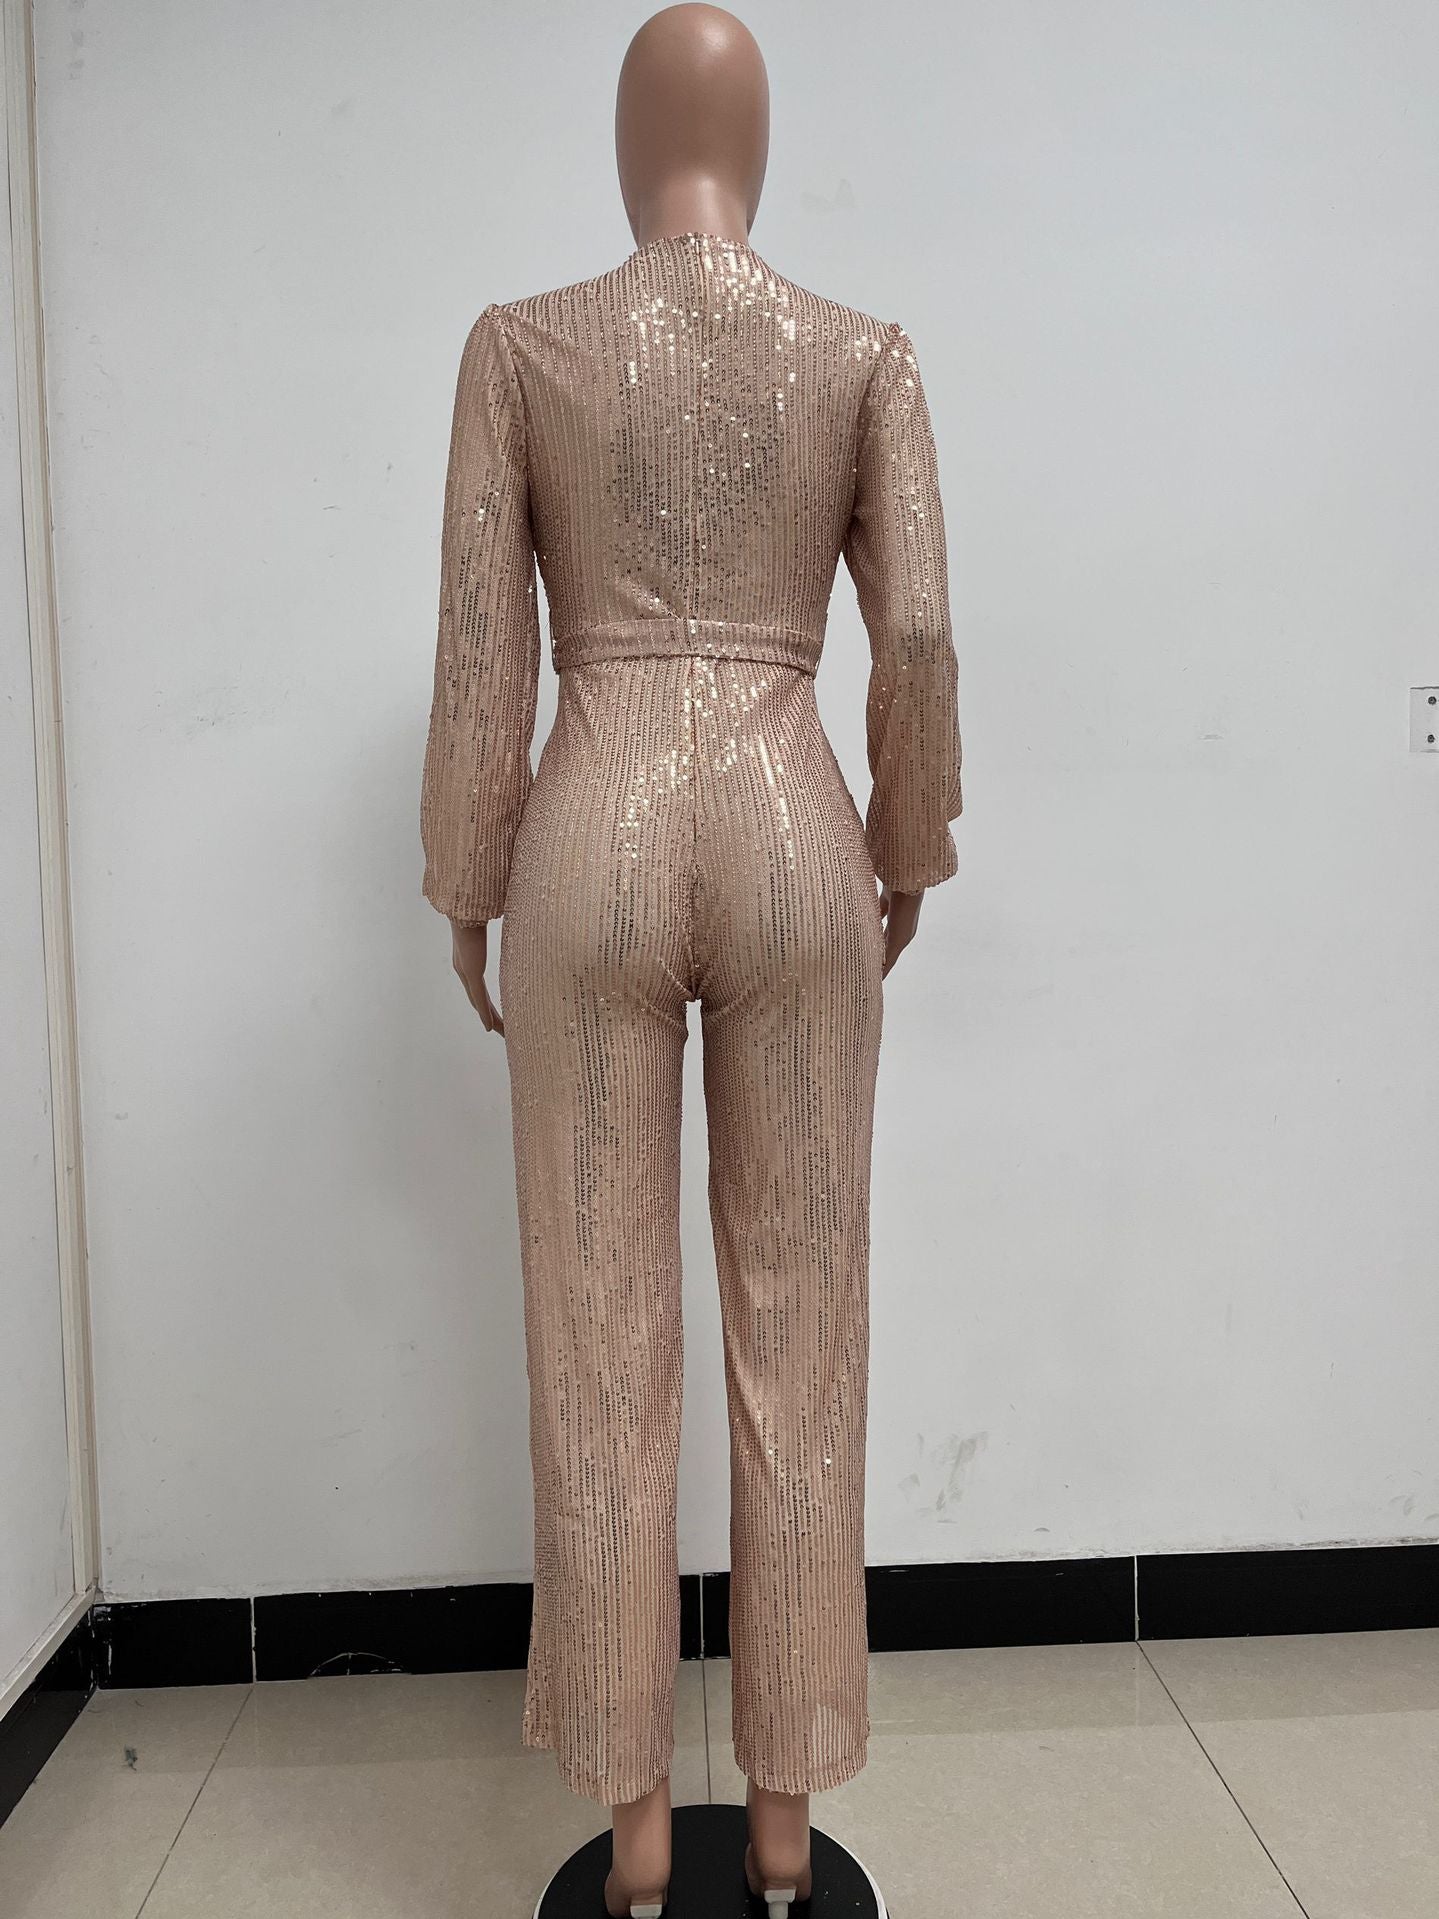 BamBam Fashion Casual Long Sleeve Belt Ladies Sequin Jumpsuit Premium Women's Clothing - BamBam Clothing